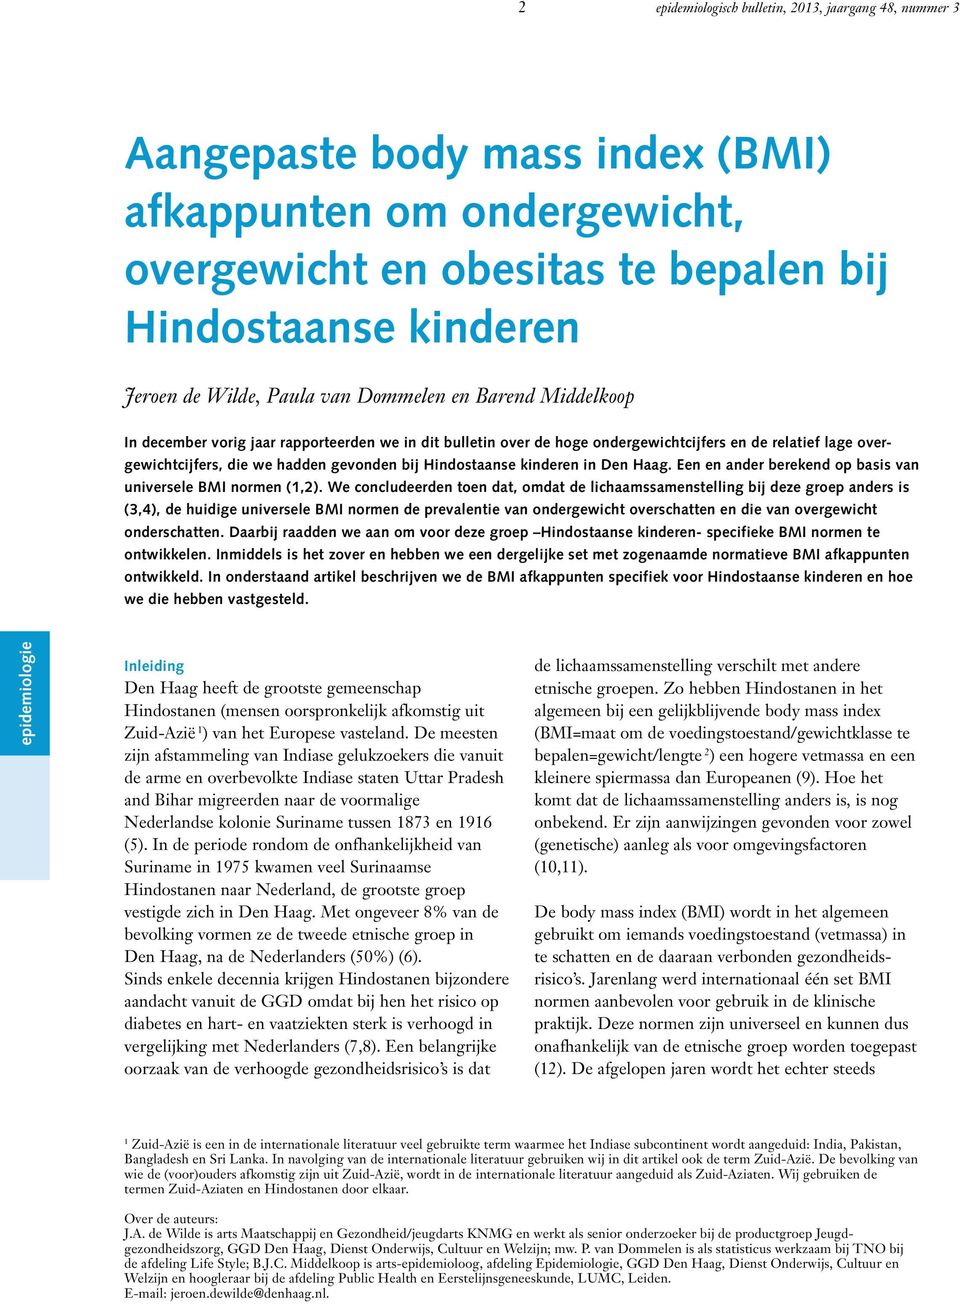 Hindostaanse kinderen in Den Haag. Een en ander berekend op basis van universele BMI normen (1,2).